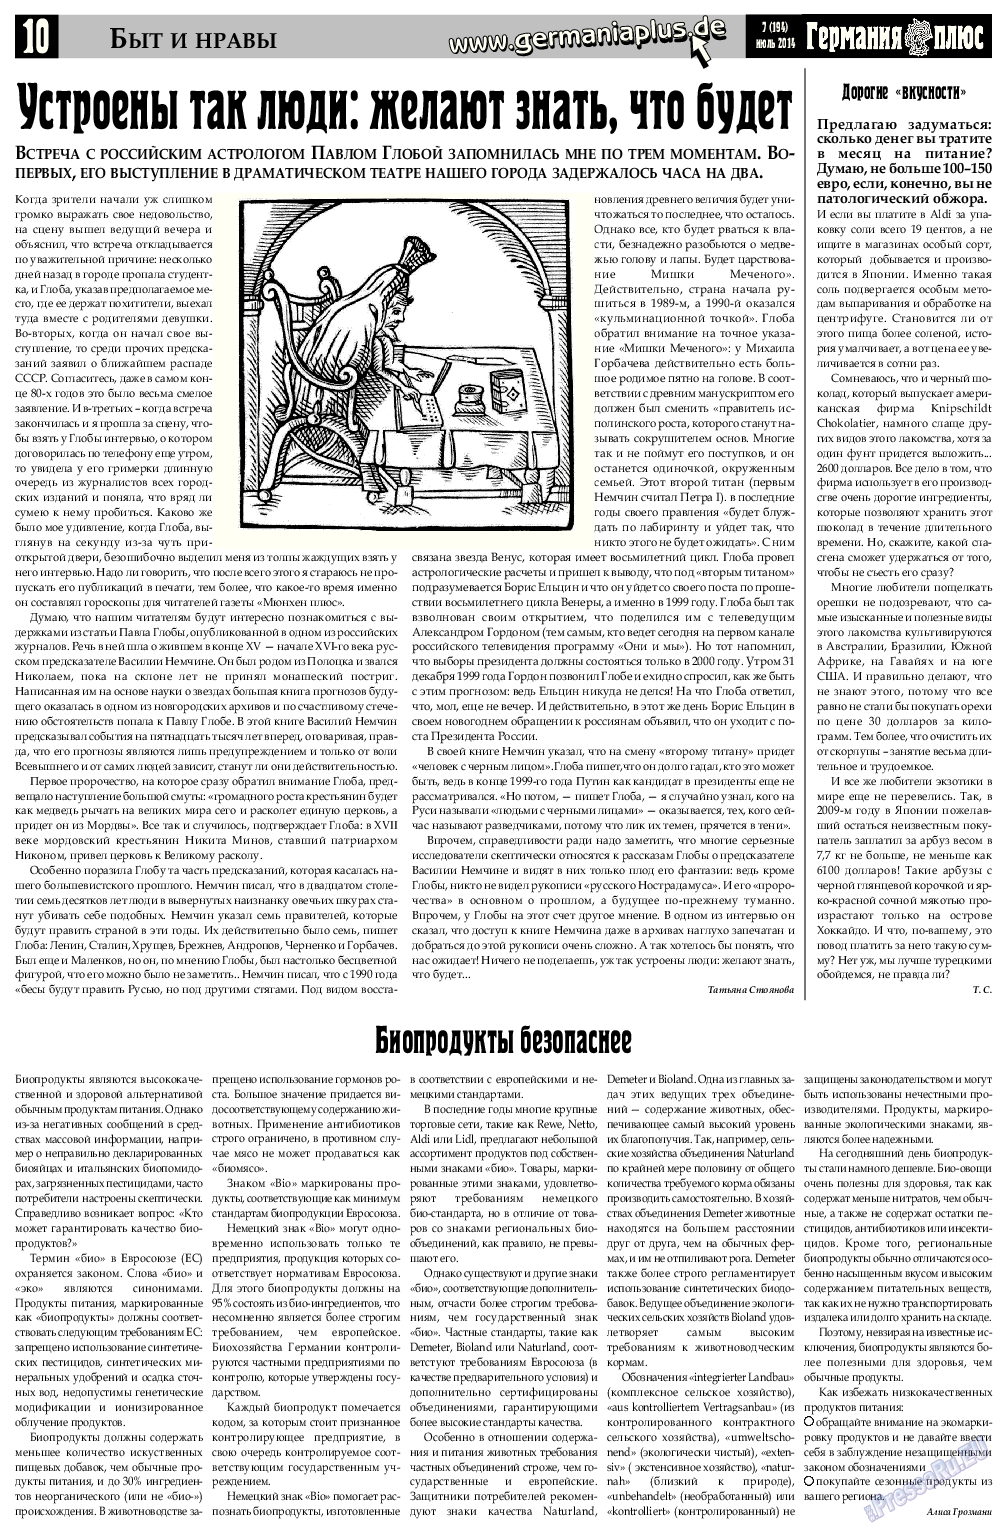 Германия плюс, газета. 2014 №7 стр.10